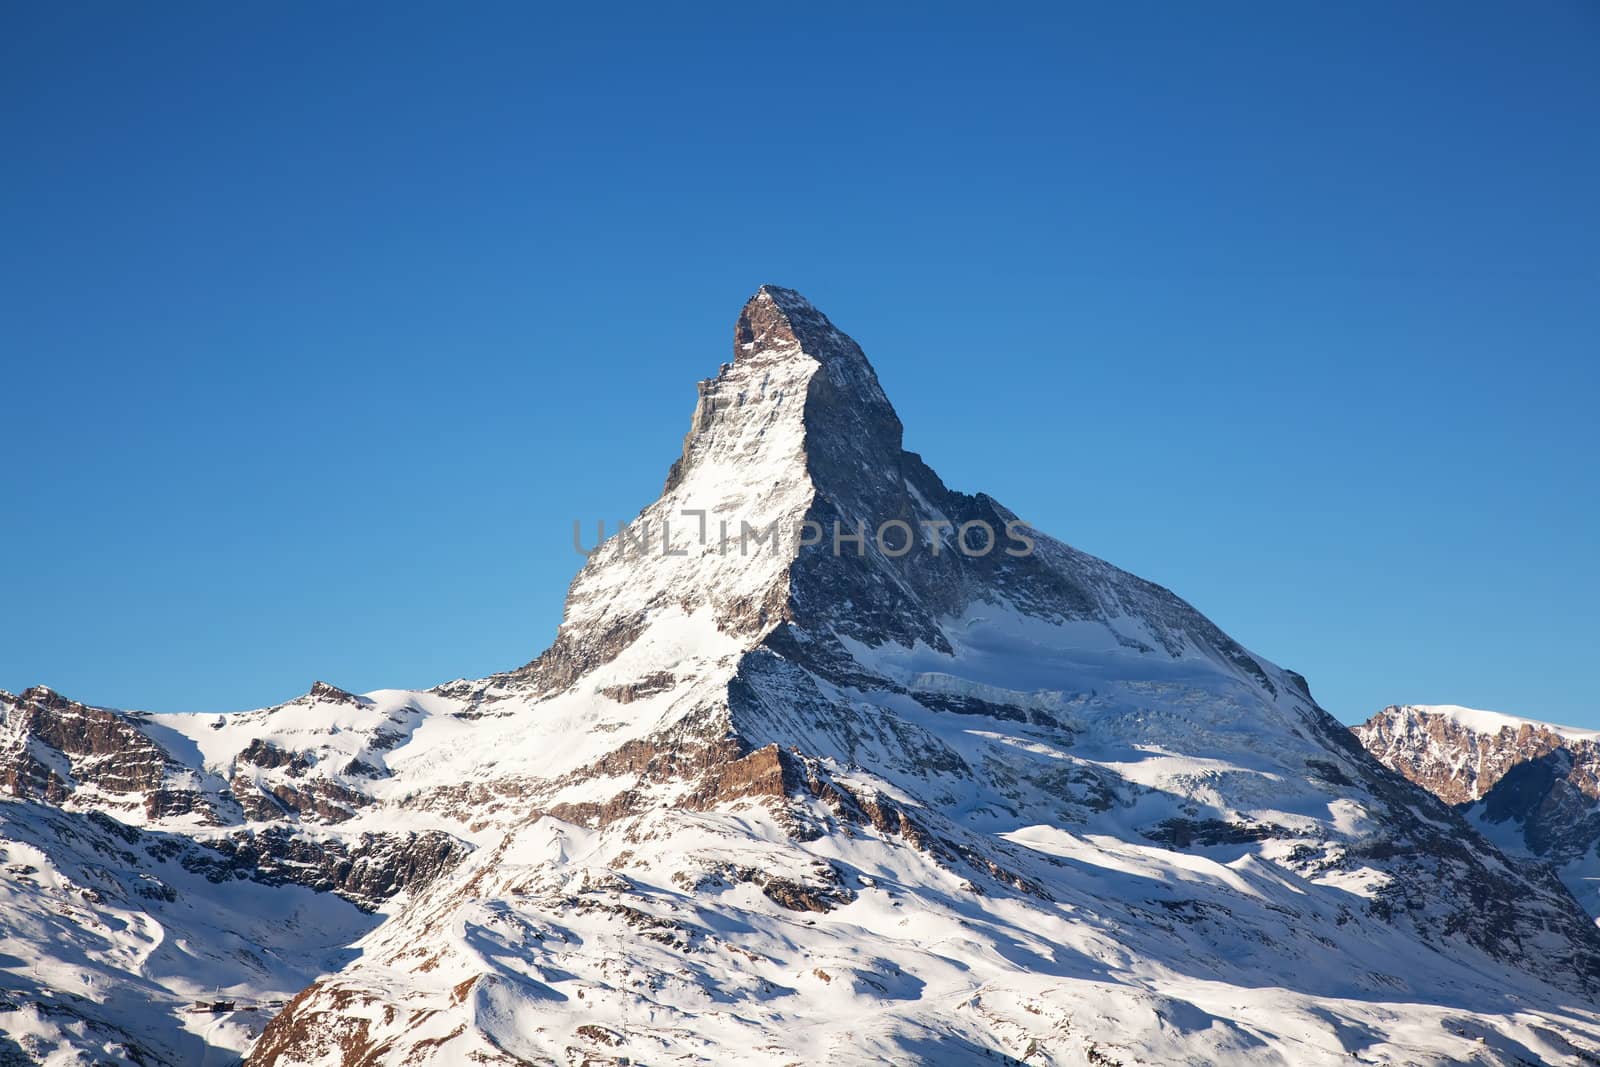 Mountain Matterhorn in Switzerland by RawGroup